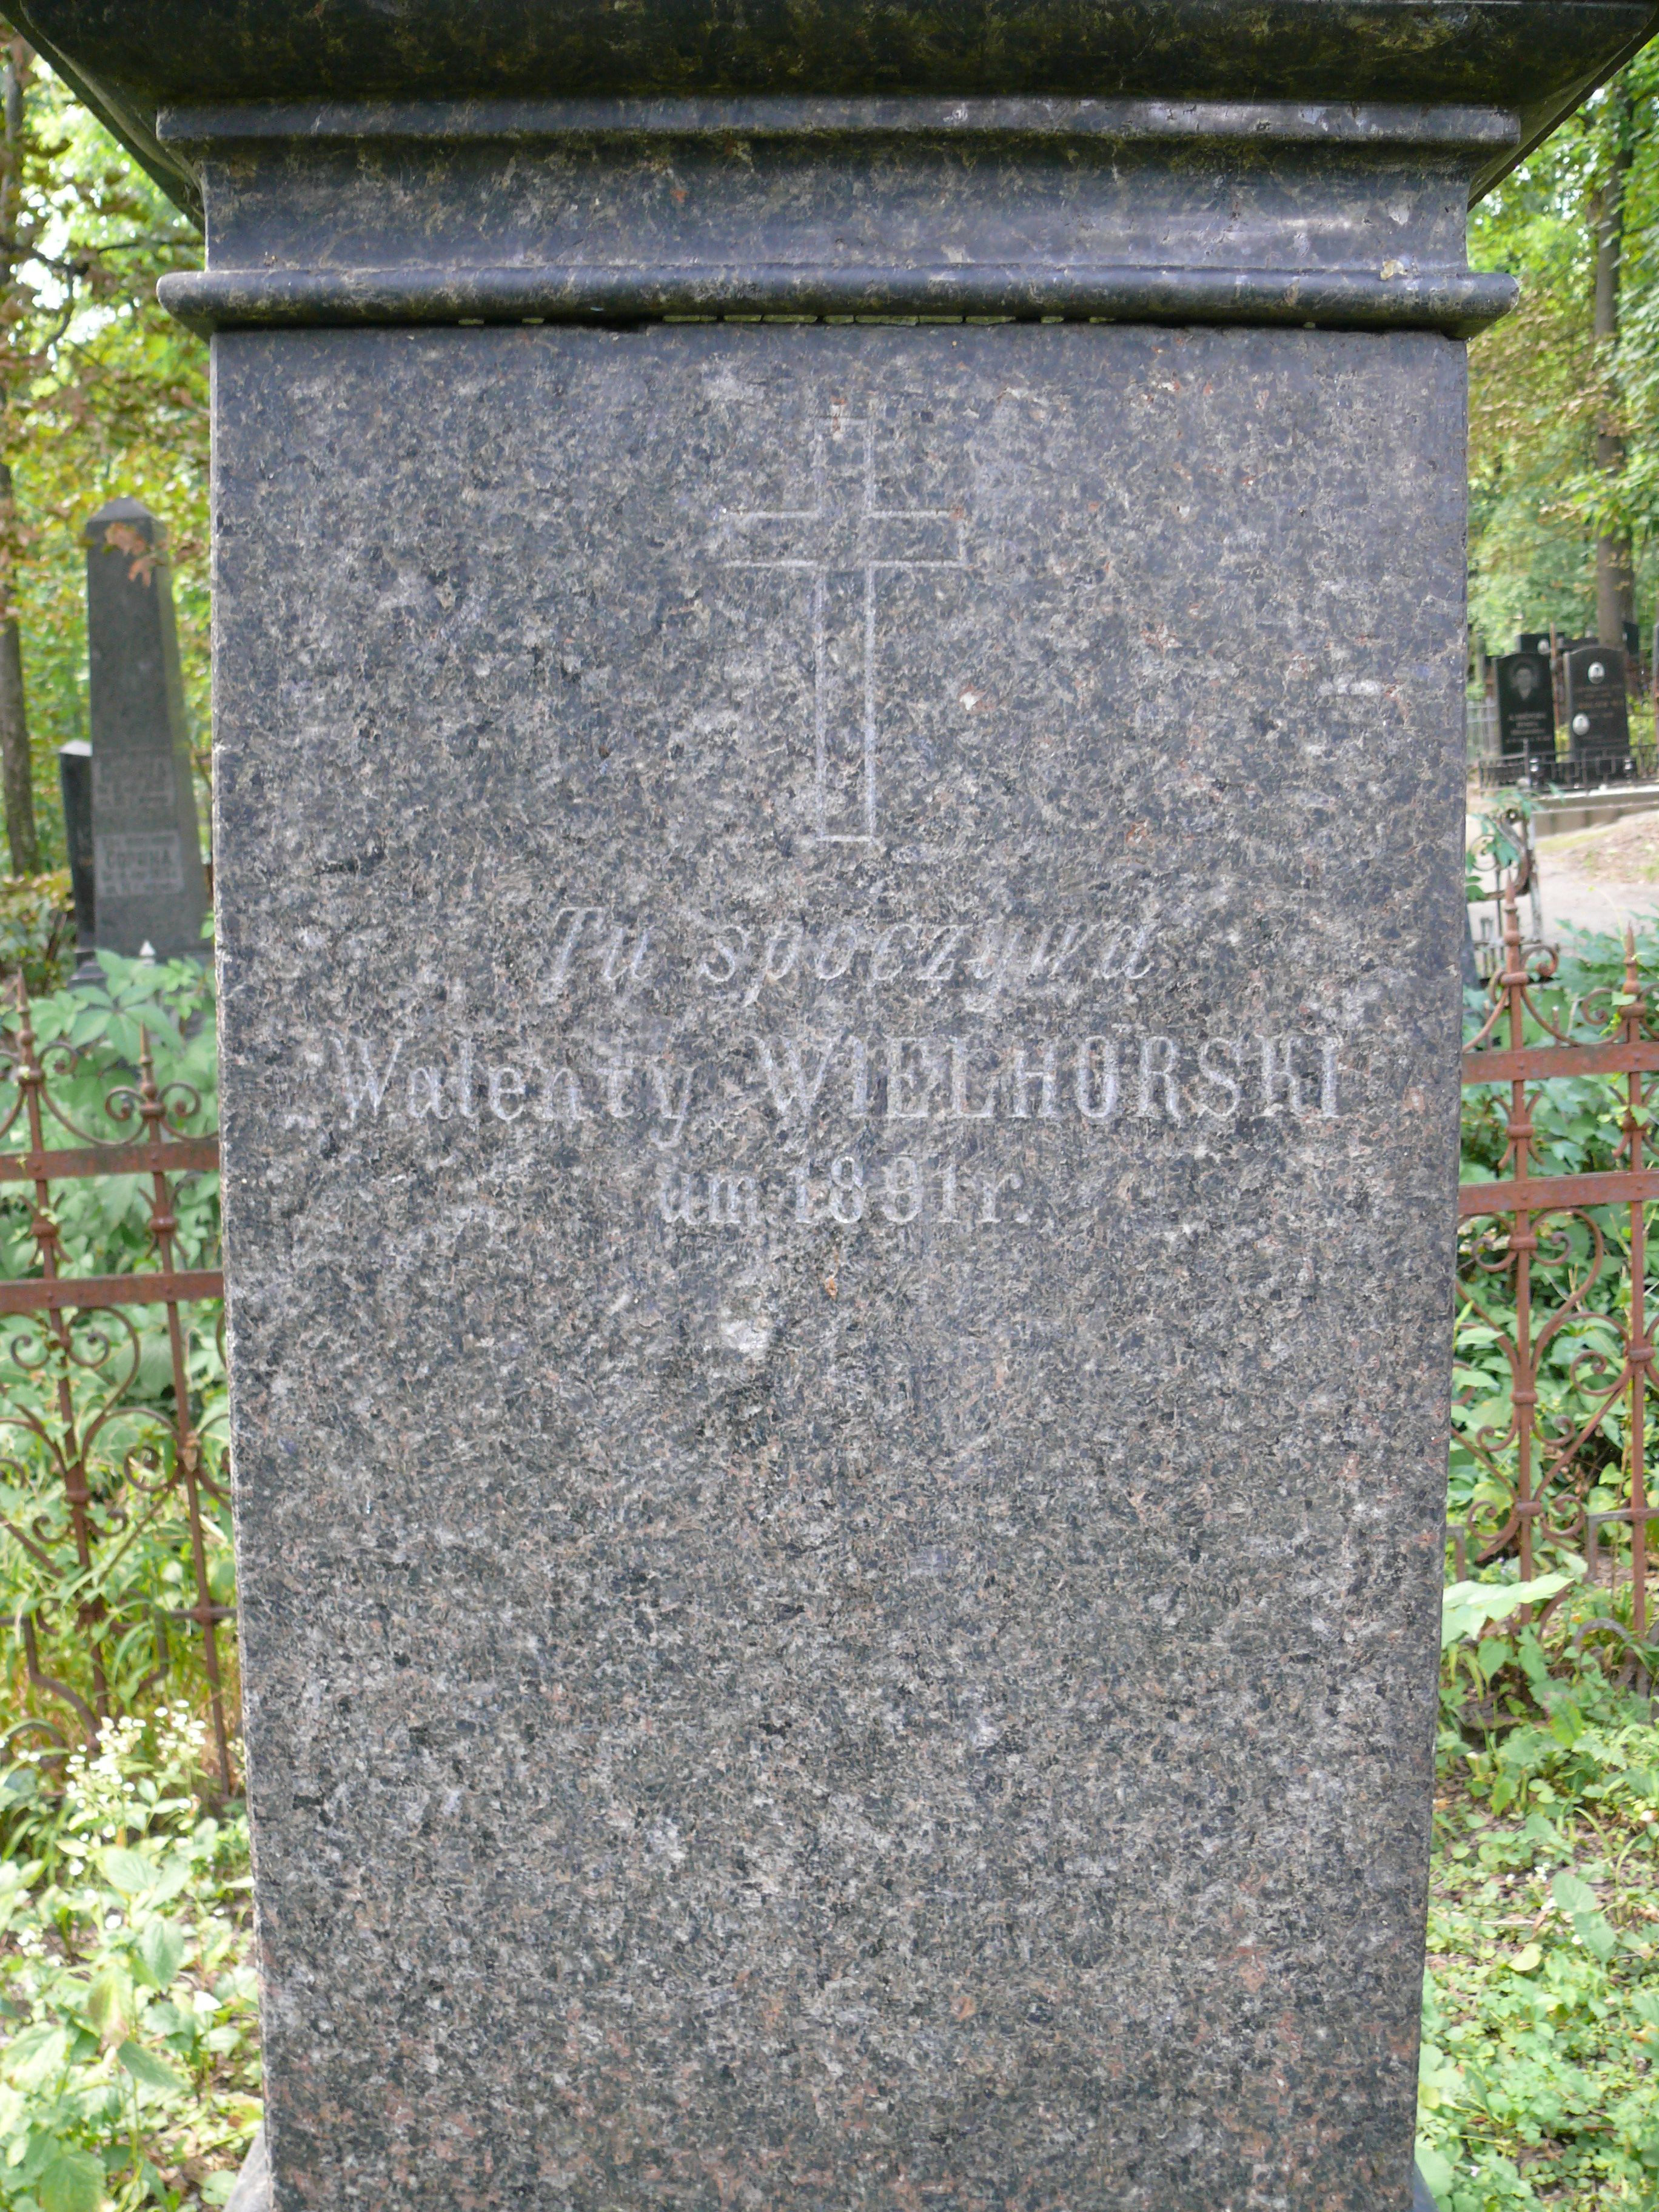 Inscription from the tombstone of Felicja and Józef Choynowski and Walenty Wielhorski